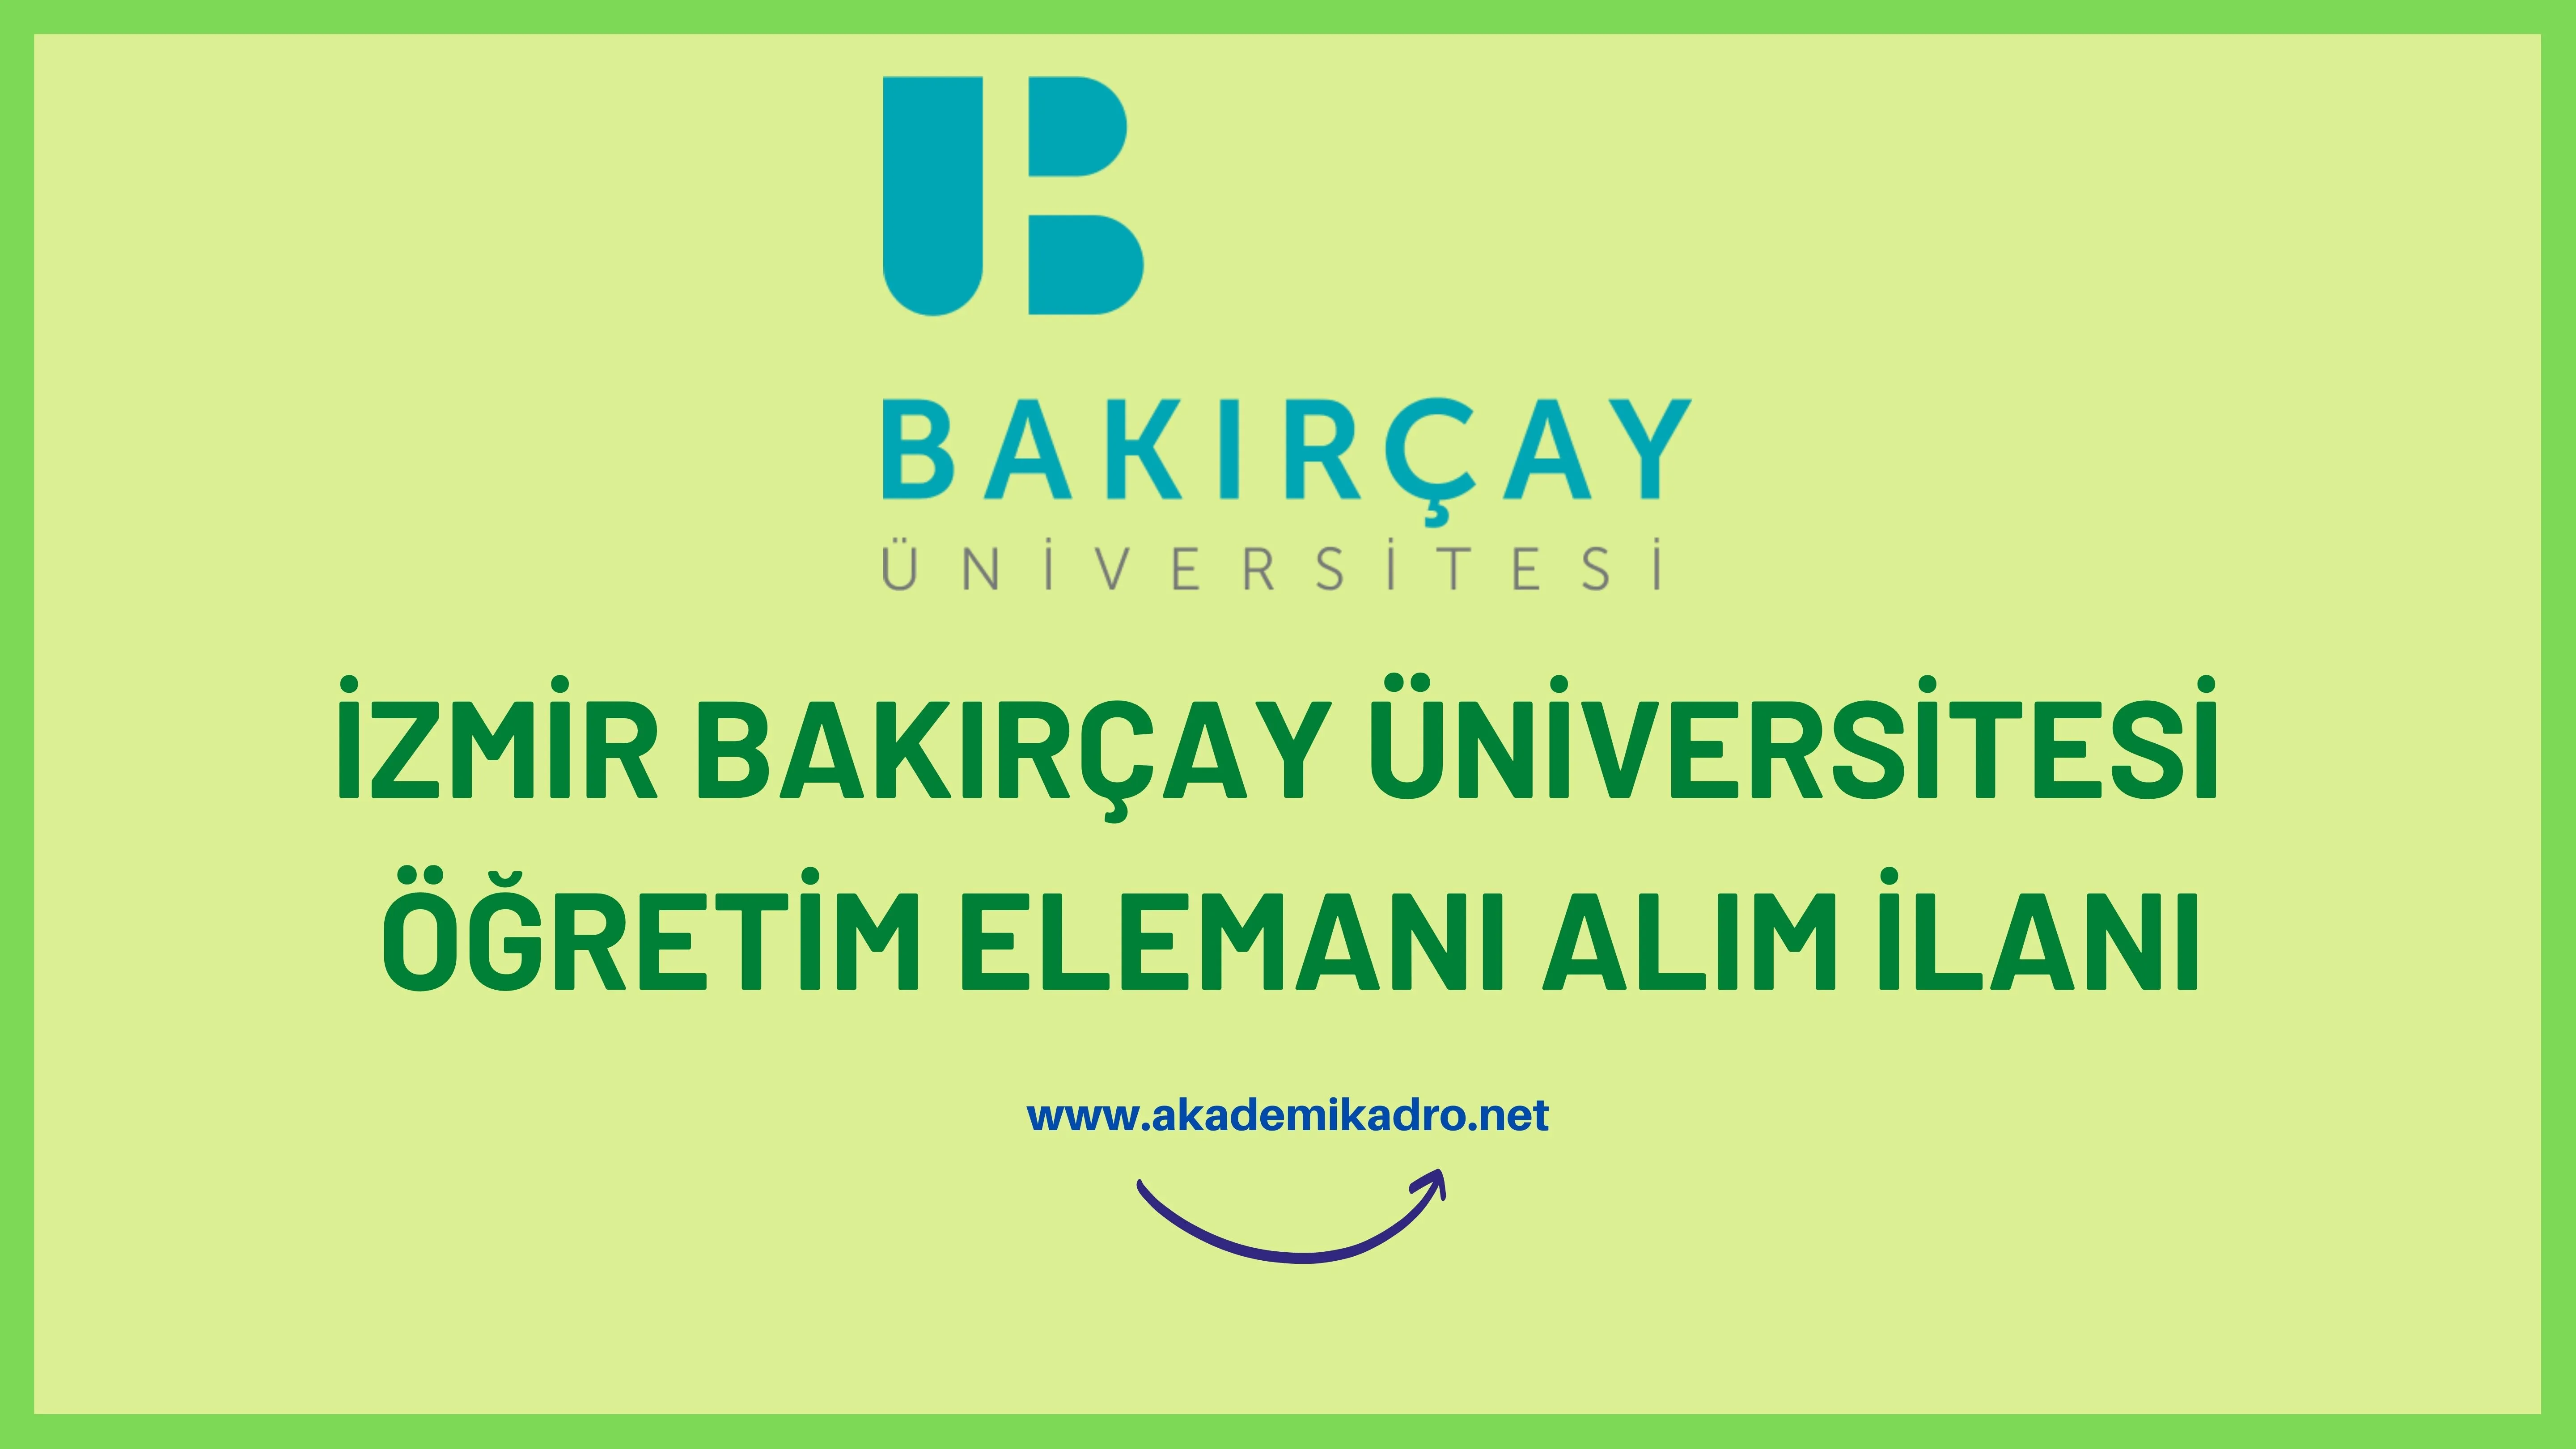 İzmir Bakırçay Üniversitesi 6 Araştırma görevlisi, öğretim görevlisi ve 11 öğretim üyesi alacak.